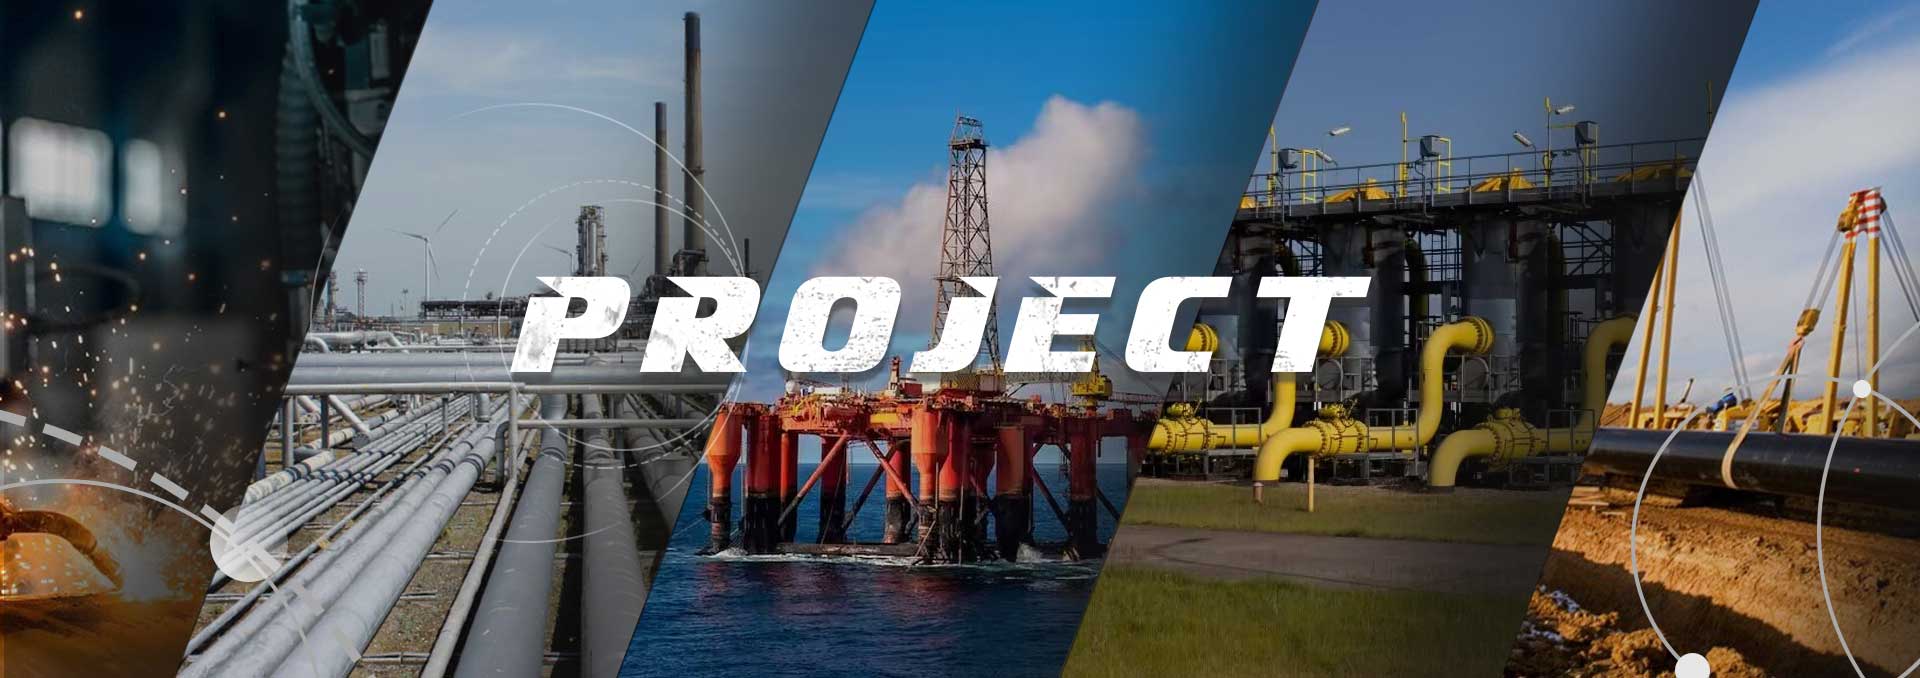 Proyectos de tubería de acero, proyecto de transporte de agua de petróleo y gas de tubería de acero, Union Steel Industry Co., Ltd